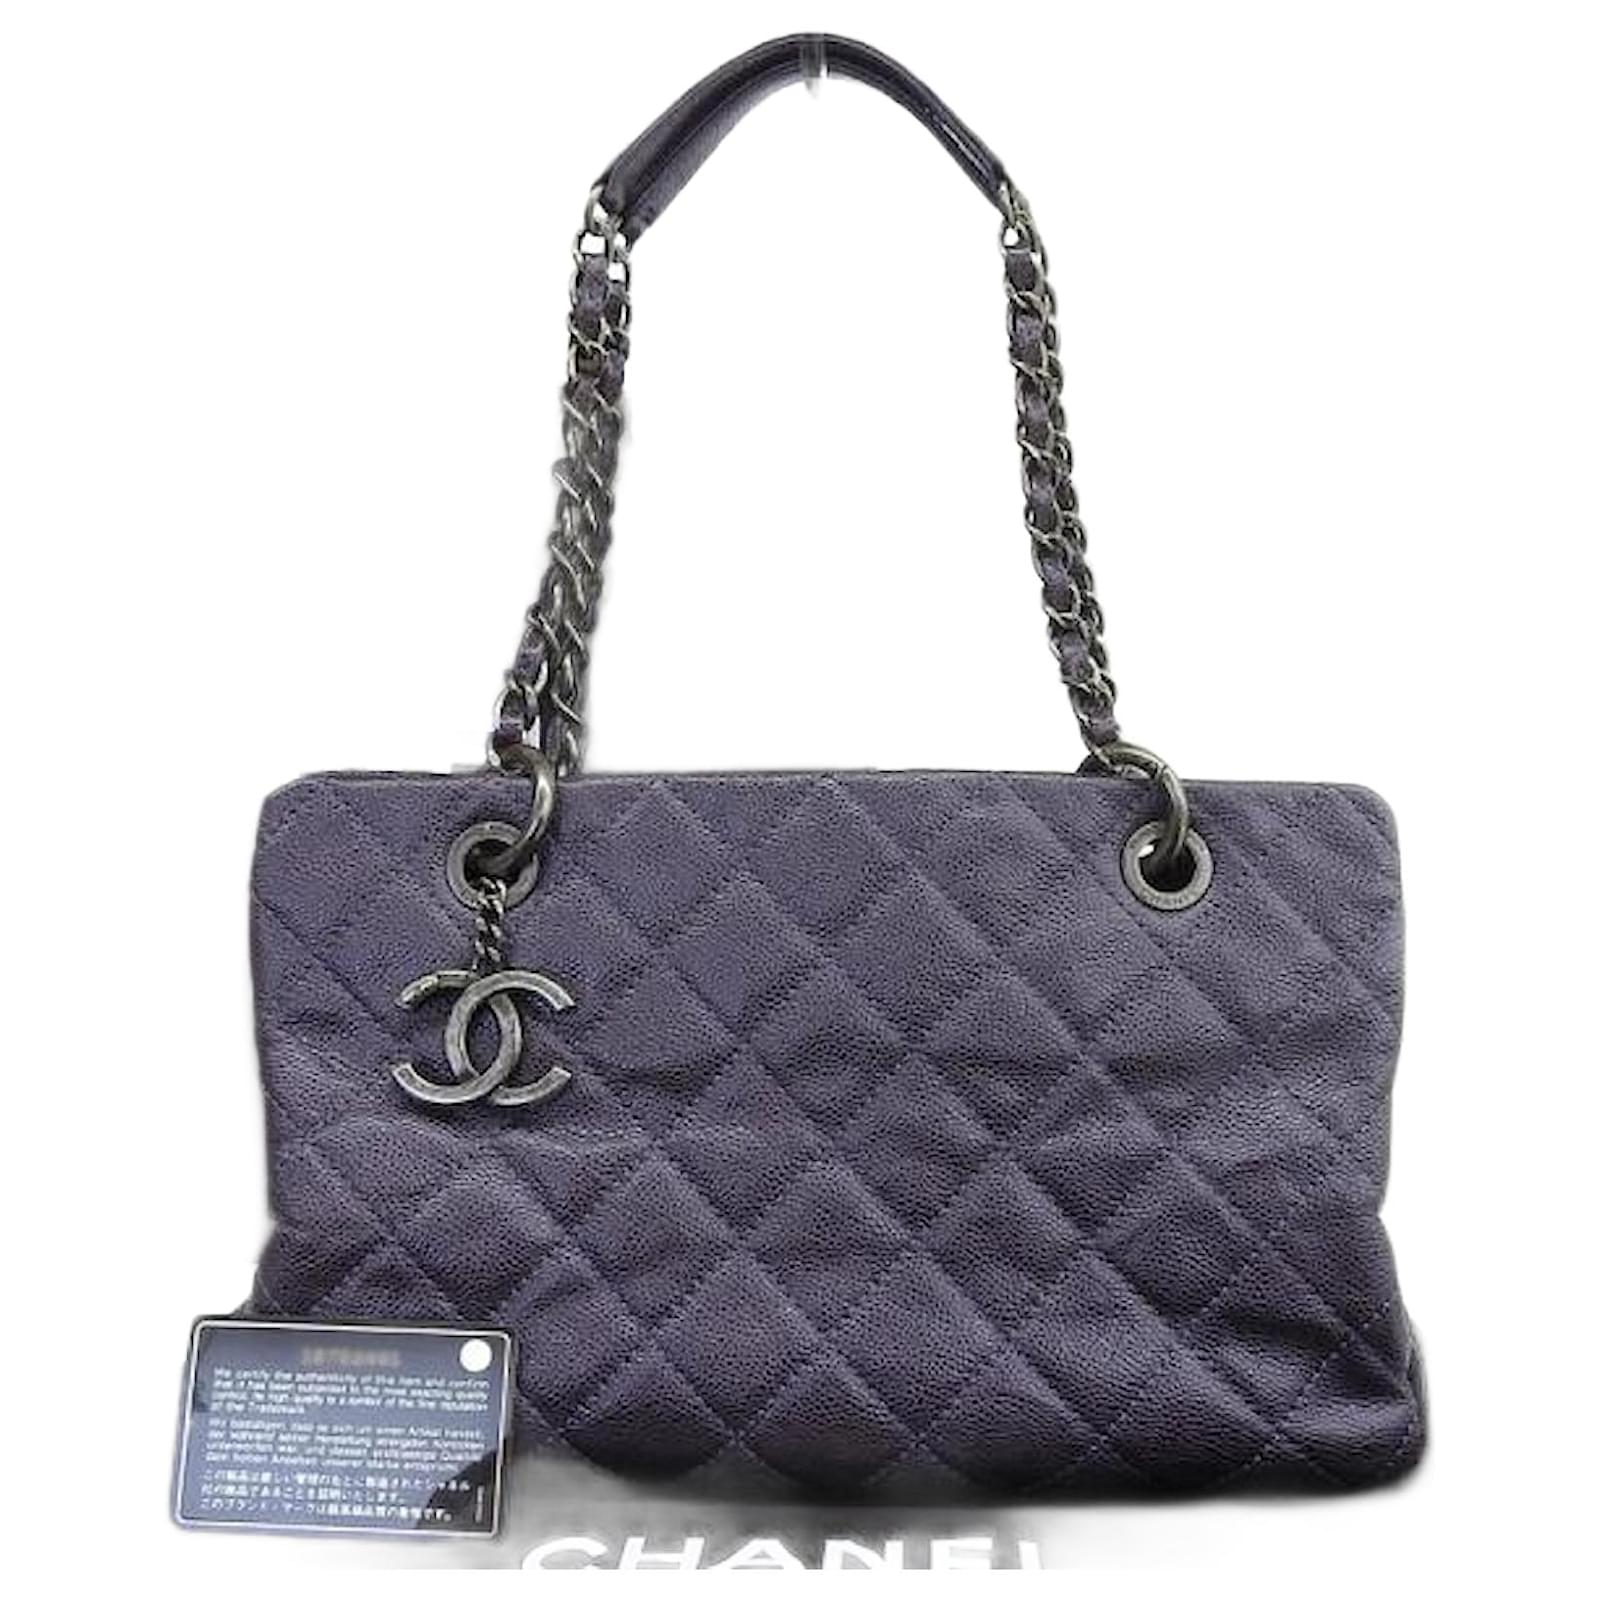 chanel purple tote bag